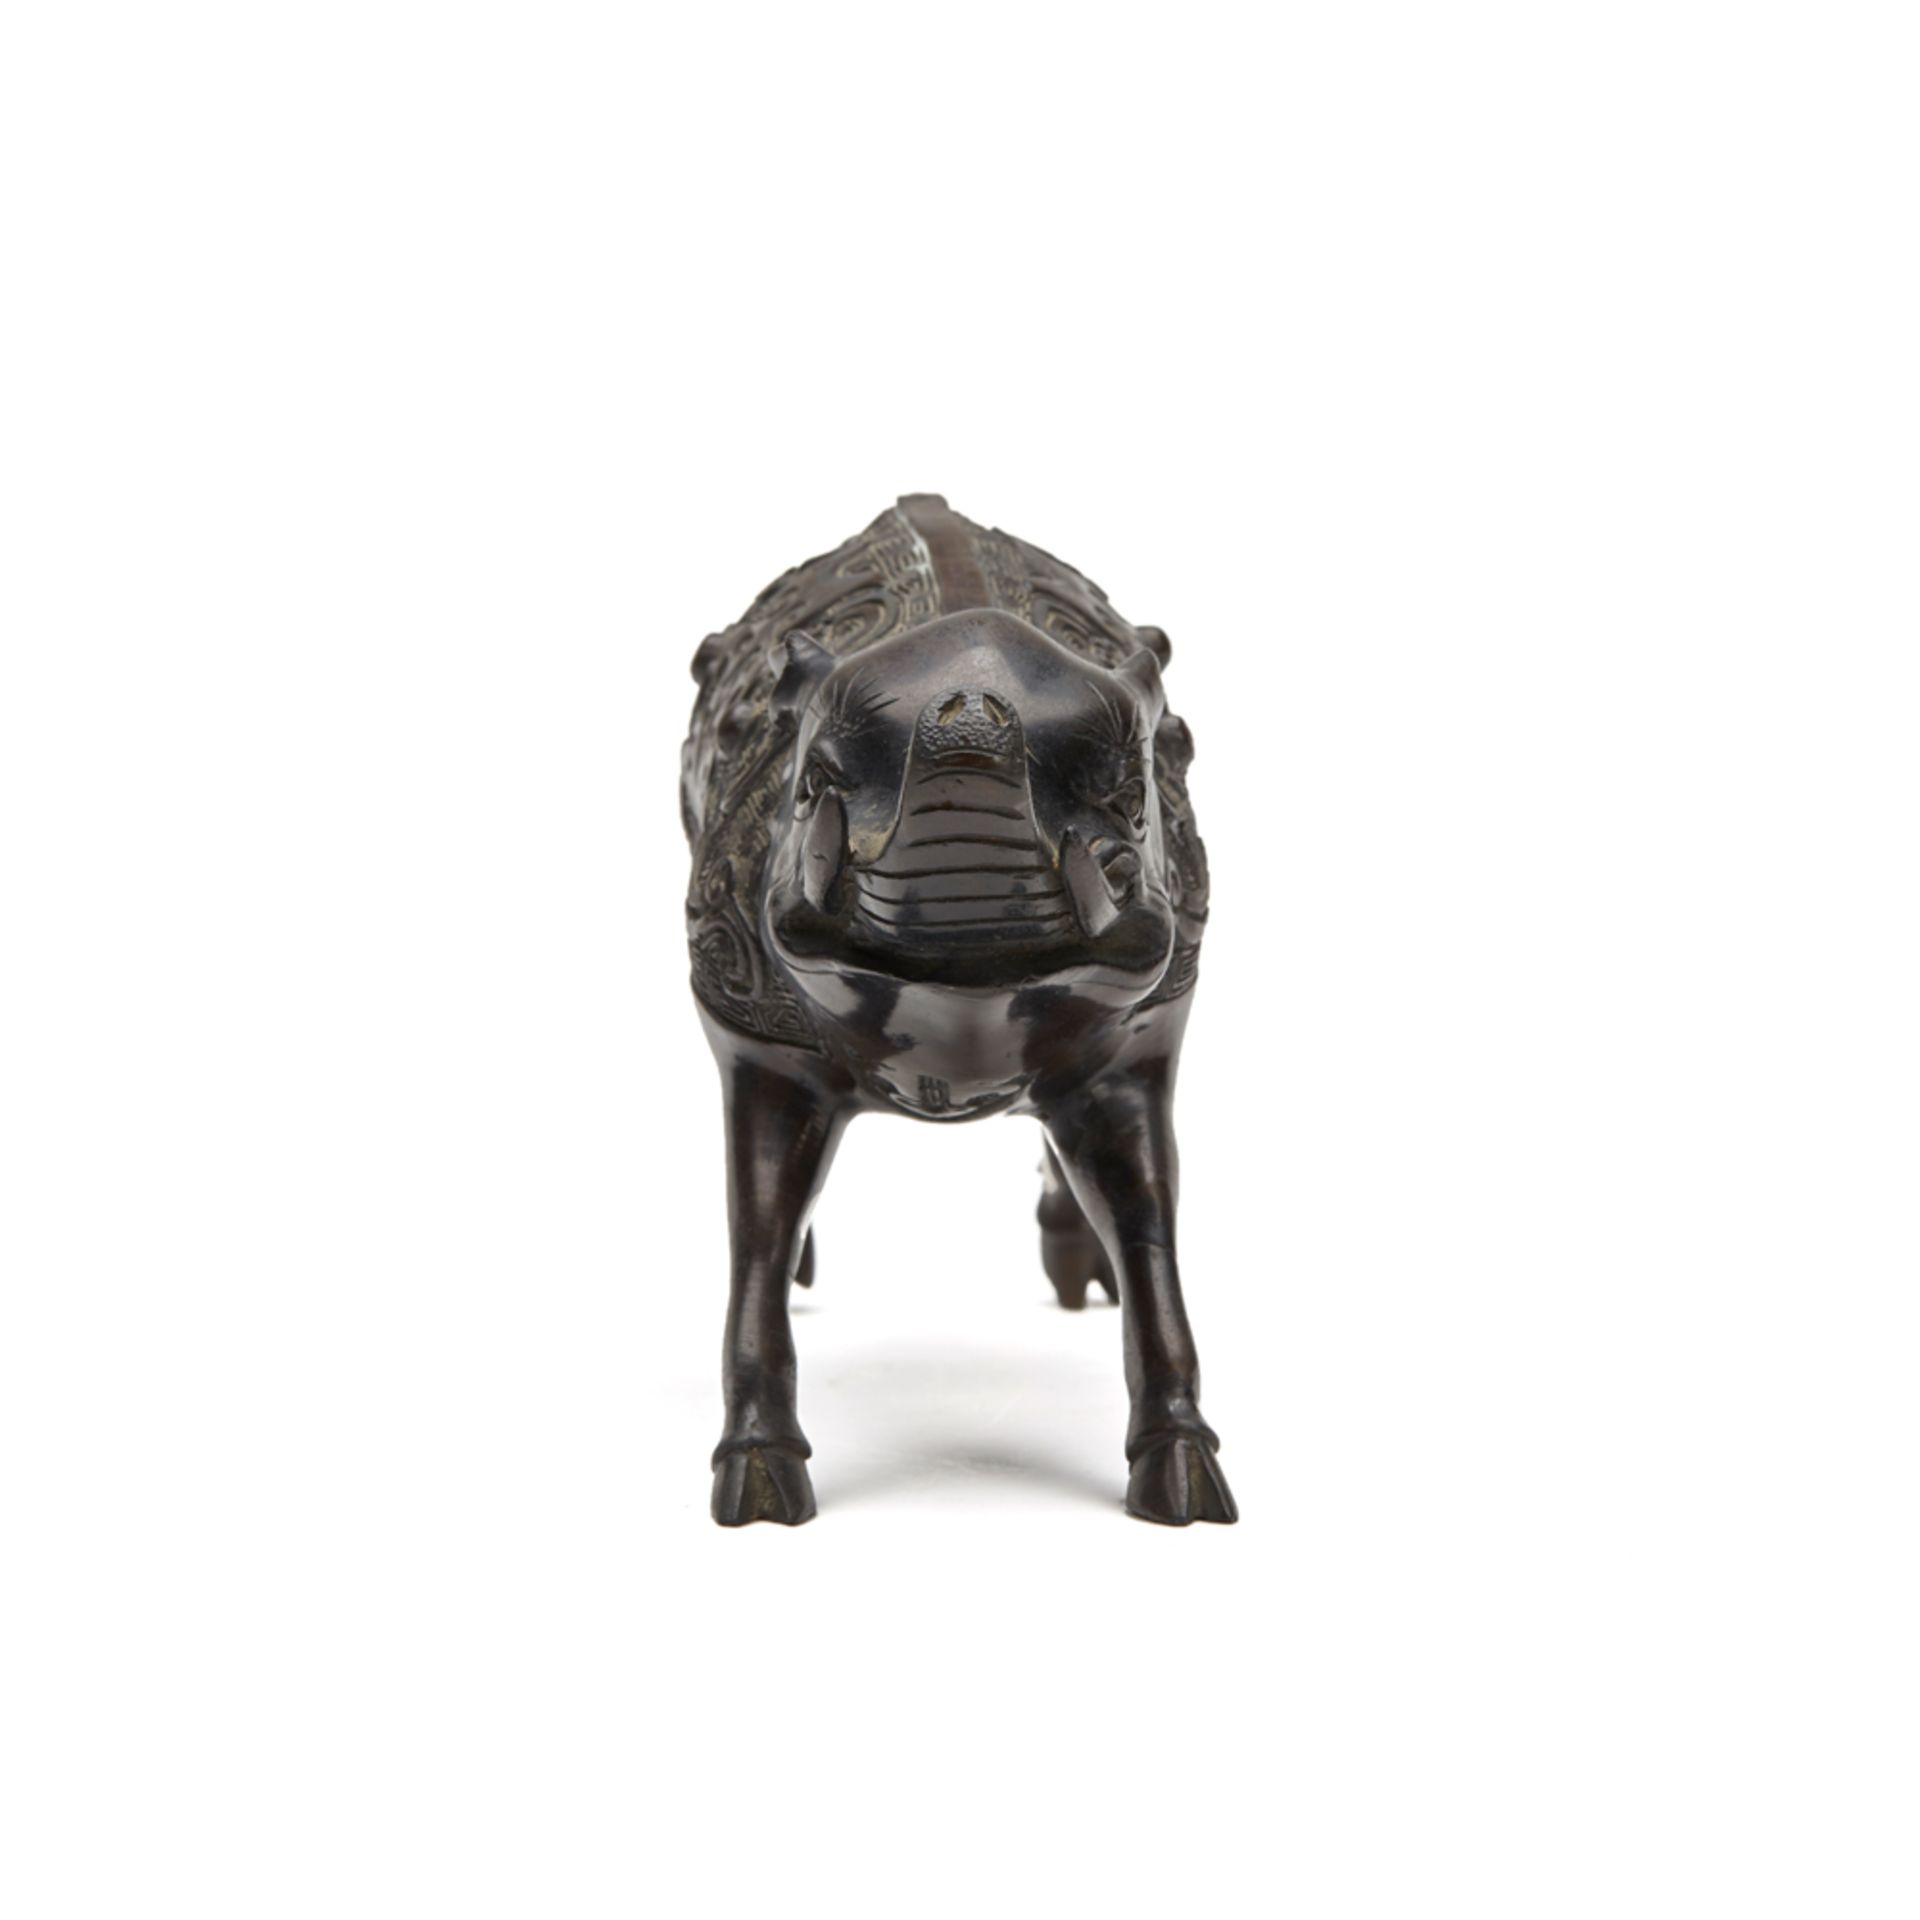 Japanese Meiji Bronze Wild Boar Figure 19Th C. - Image 4 of 8